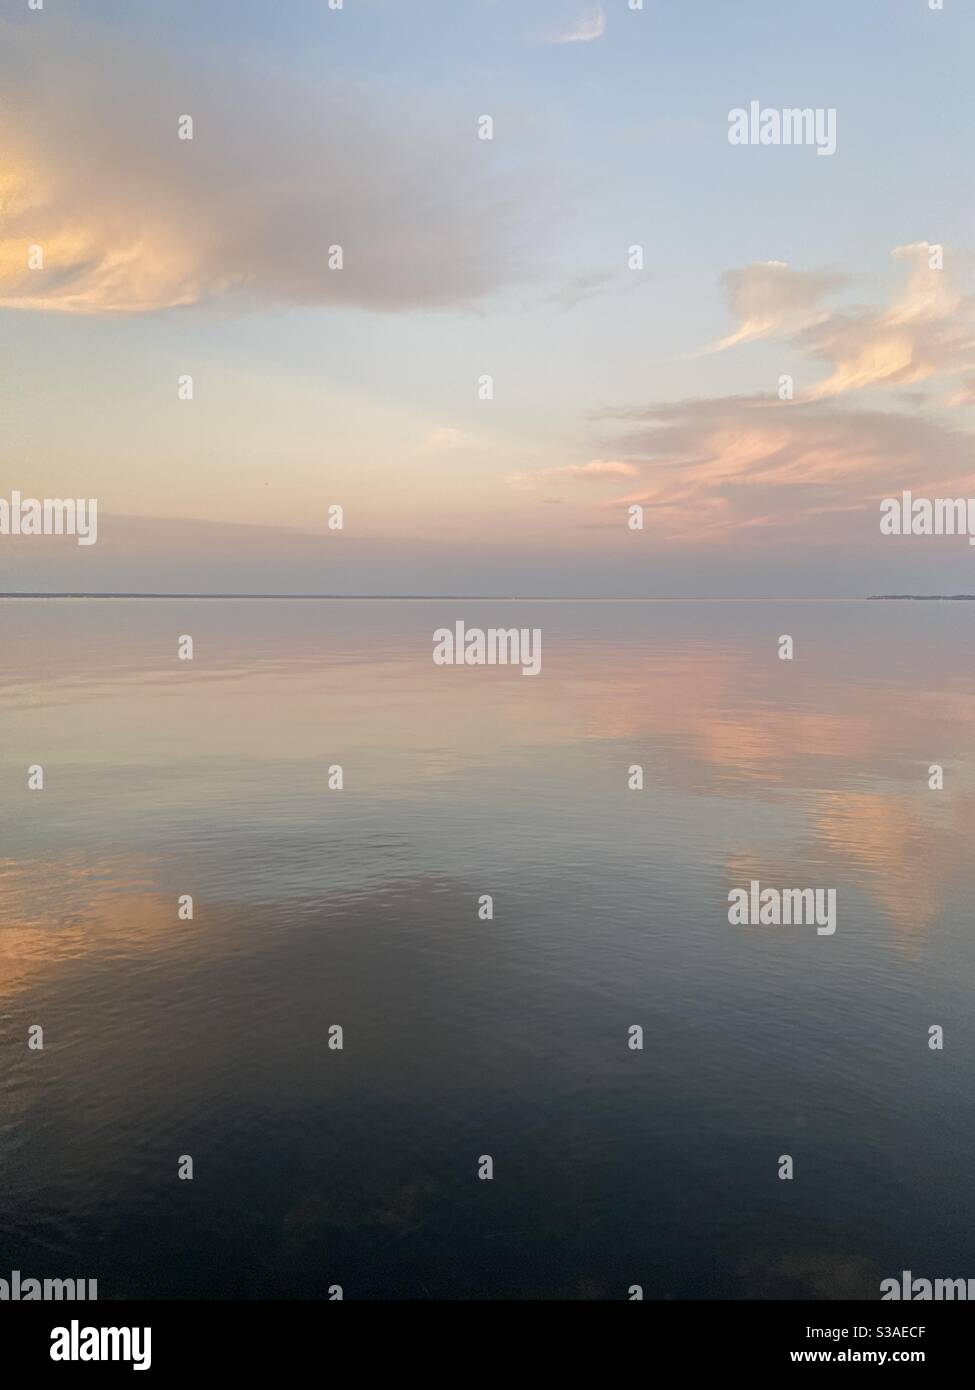 Sanfter, pastellfarbener Sonnenuntergang am ruhigen, noch in der Bucht abgehenden Wasser Stockfoto